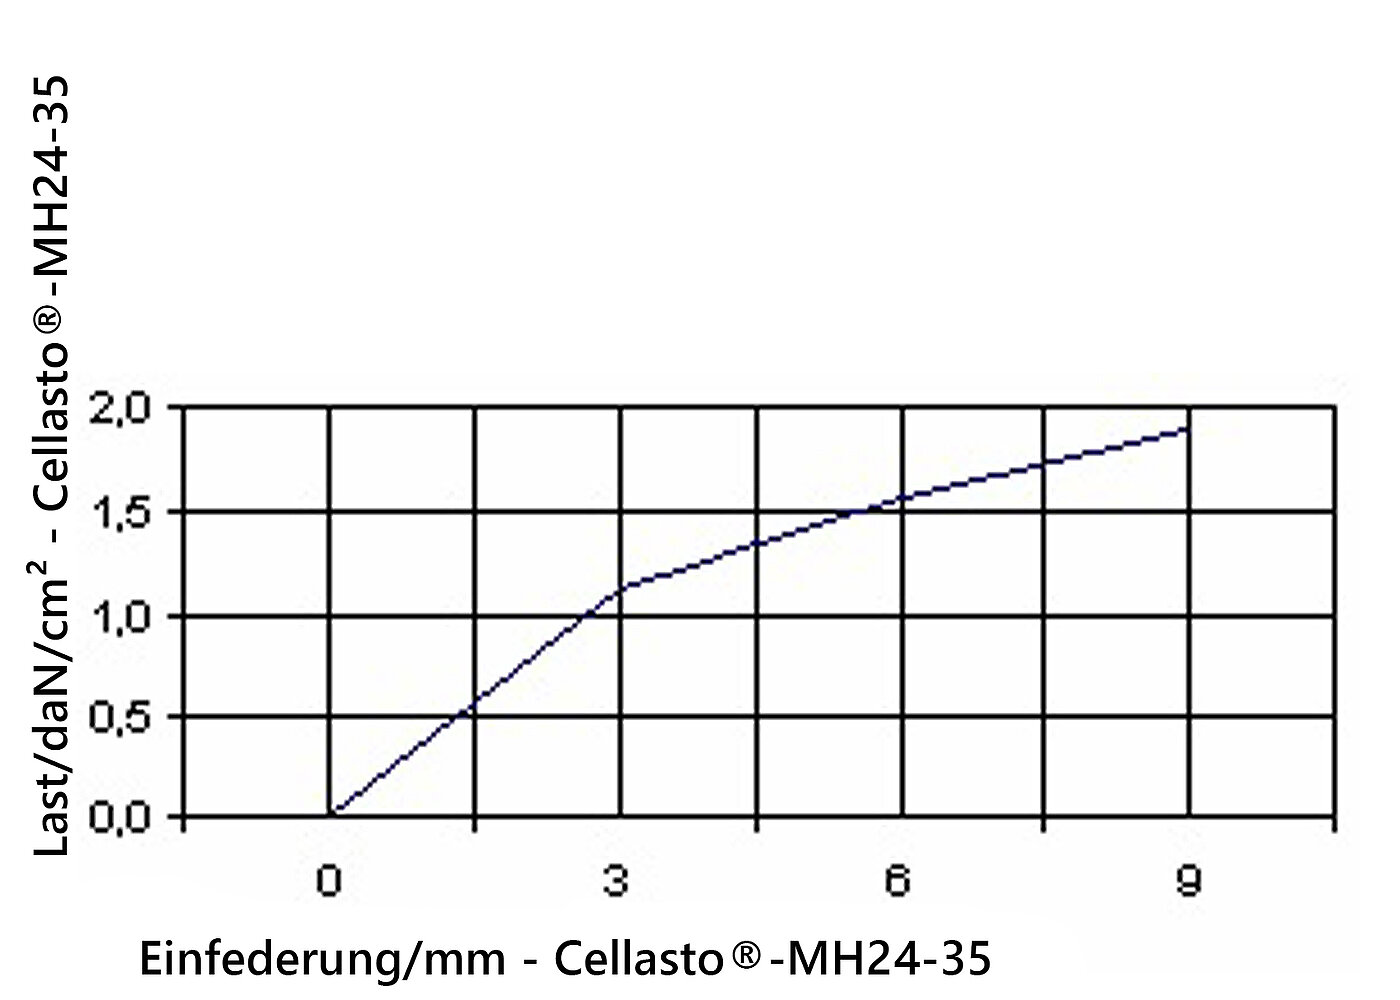 Diagramm der Einfederung der Elastomerplatte Cellasto®MH24-35 unter Last 